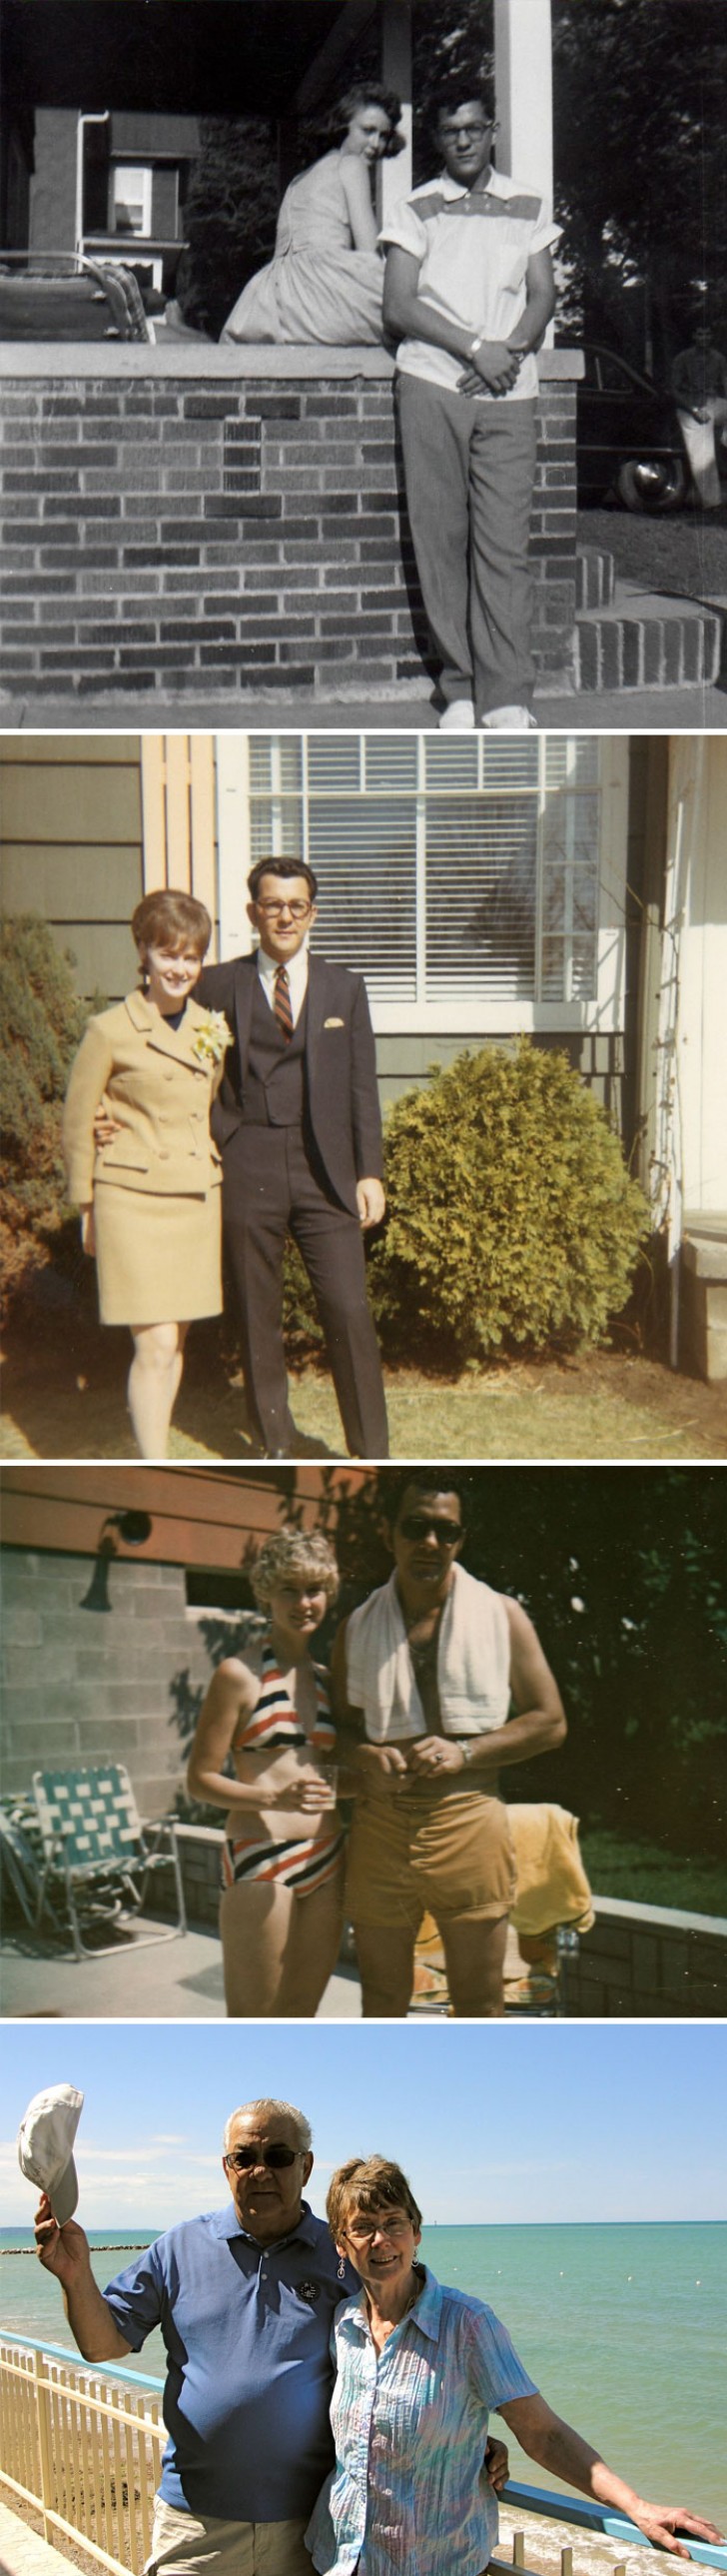 13. Mes grands-parents dans les années 1950,1960,1970 et aujourd'hui.